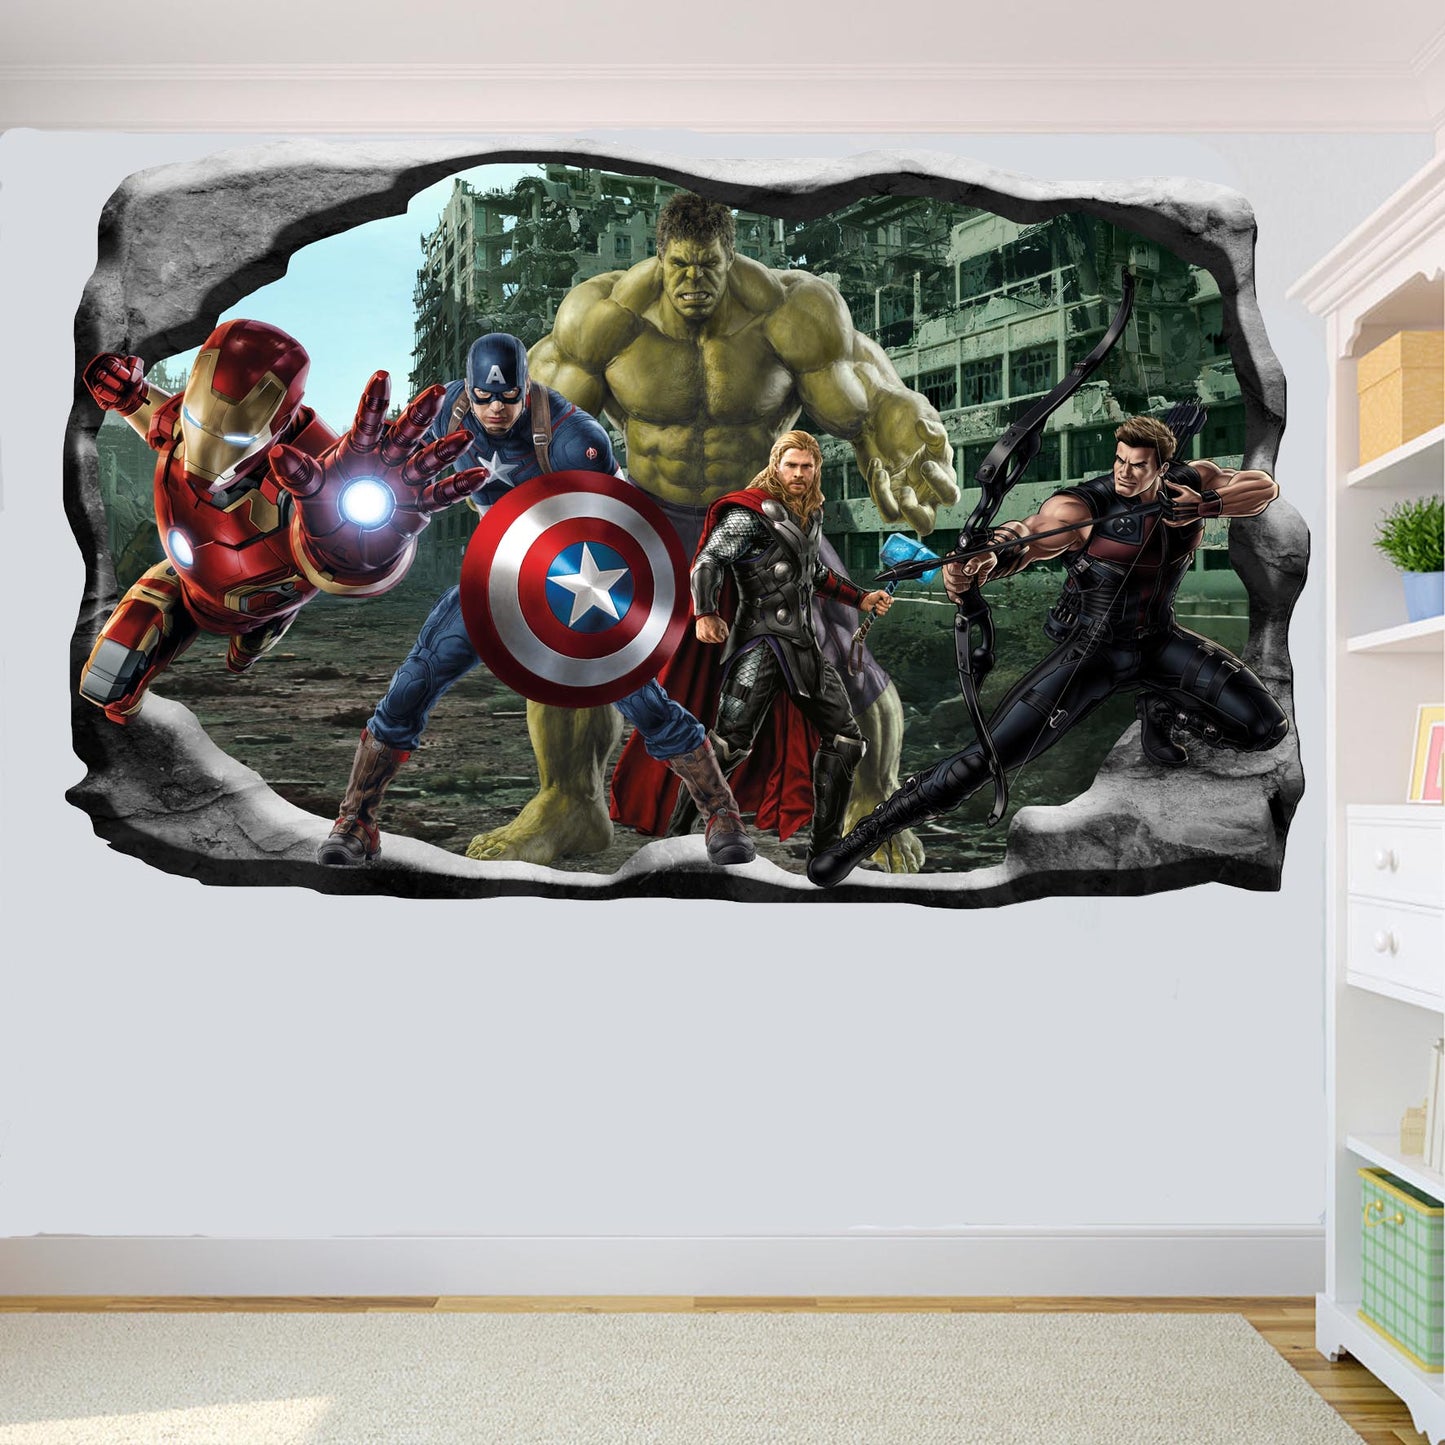 Marvel avengers hulk captain america thor poster sticker mural decal